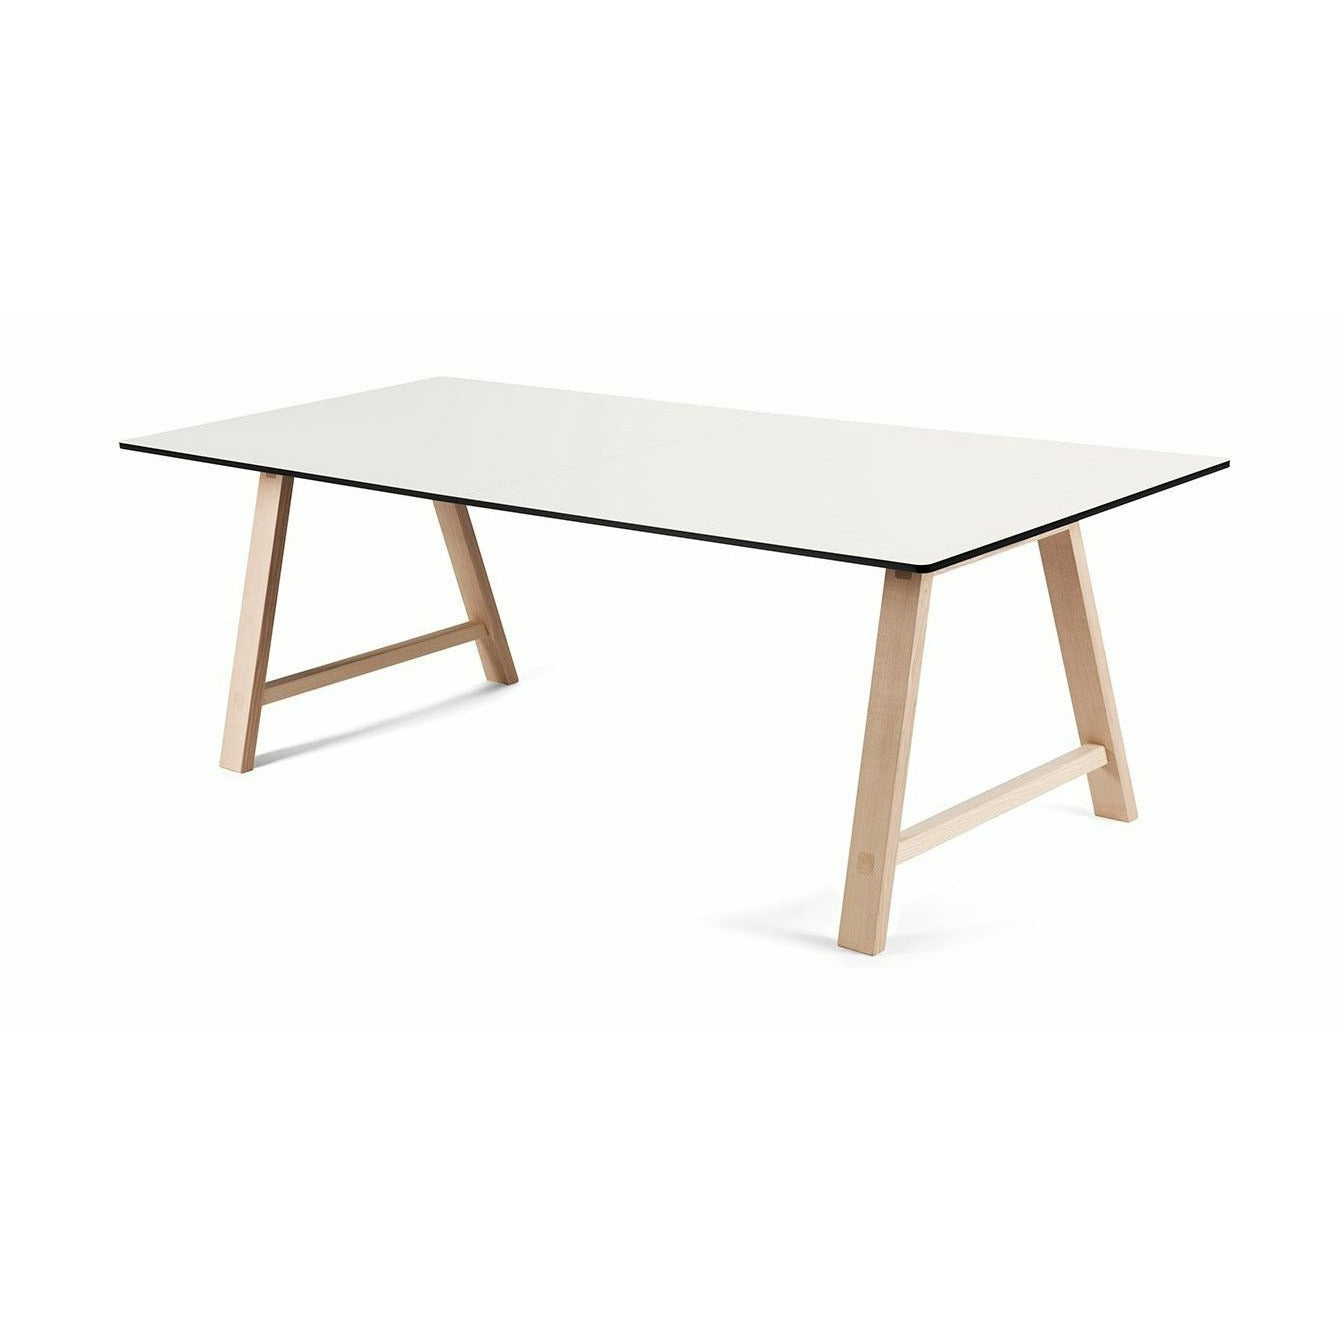 Andersen Furniture T1 Ausziehbarer Tisch, Laminat weiß, Eiche geseift, 220cm